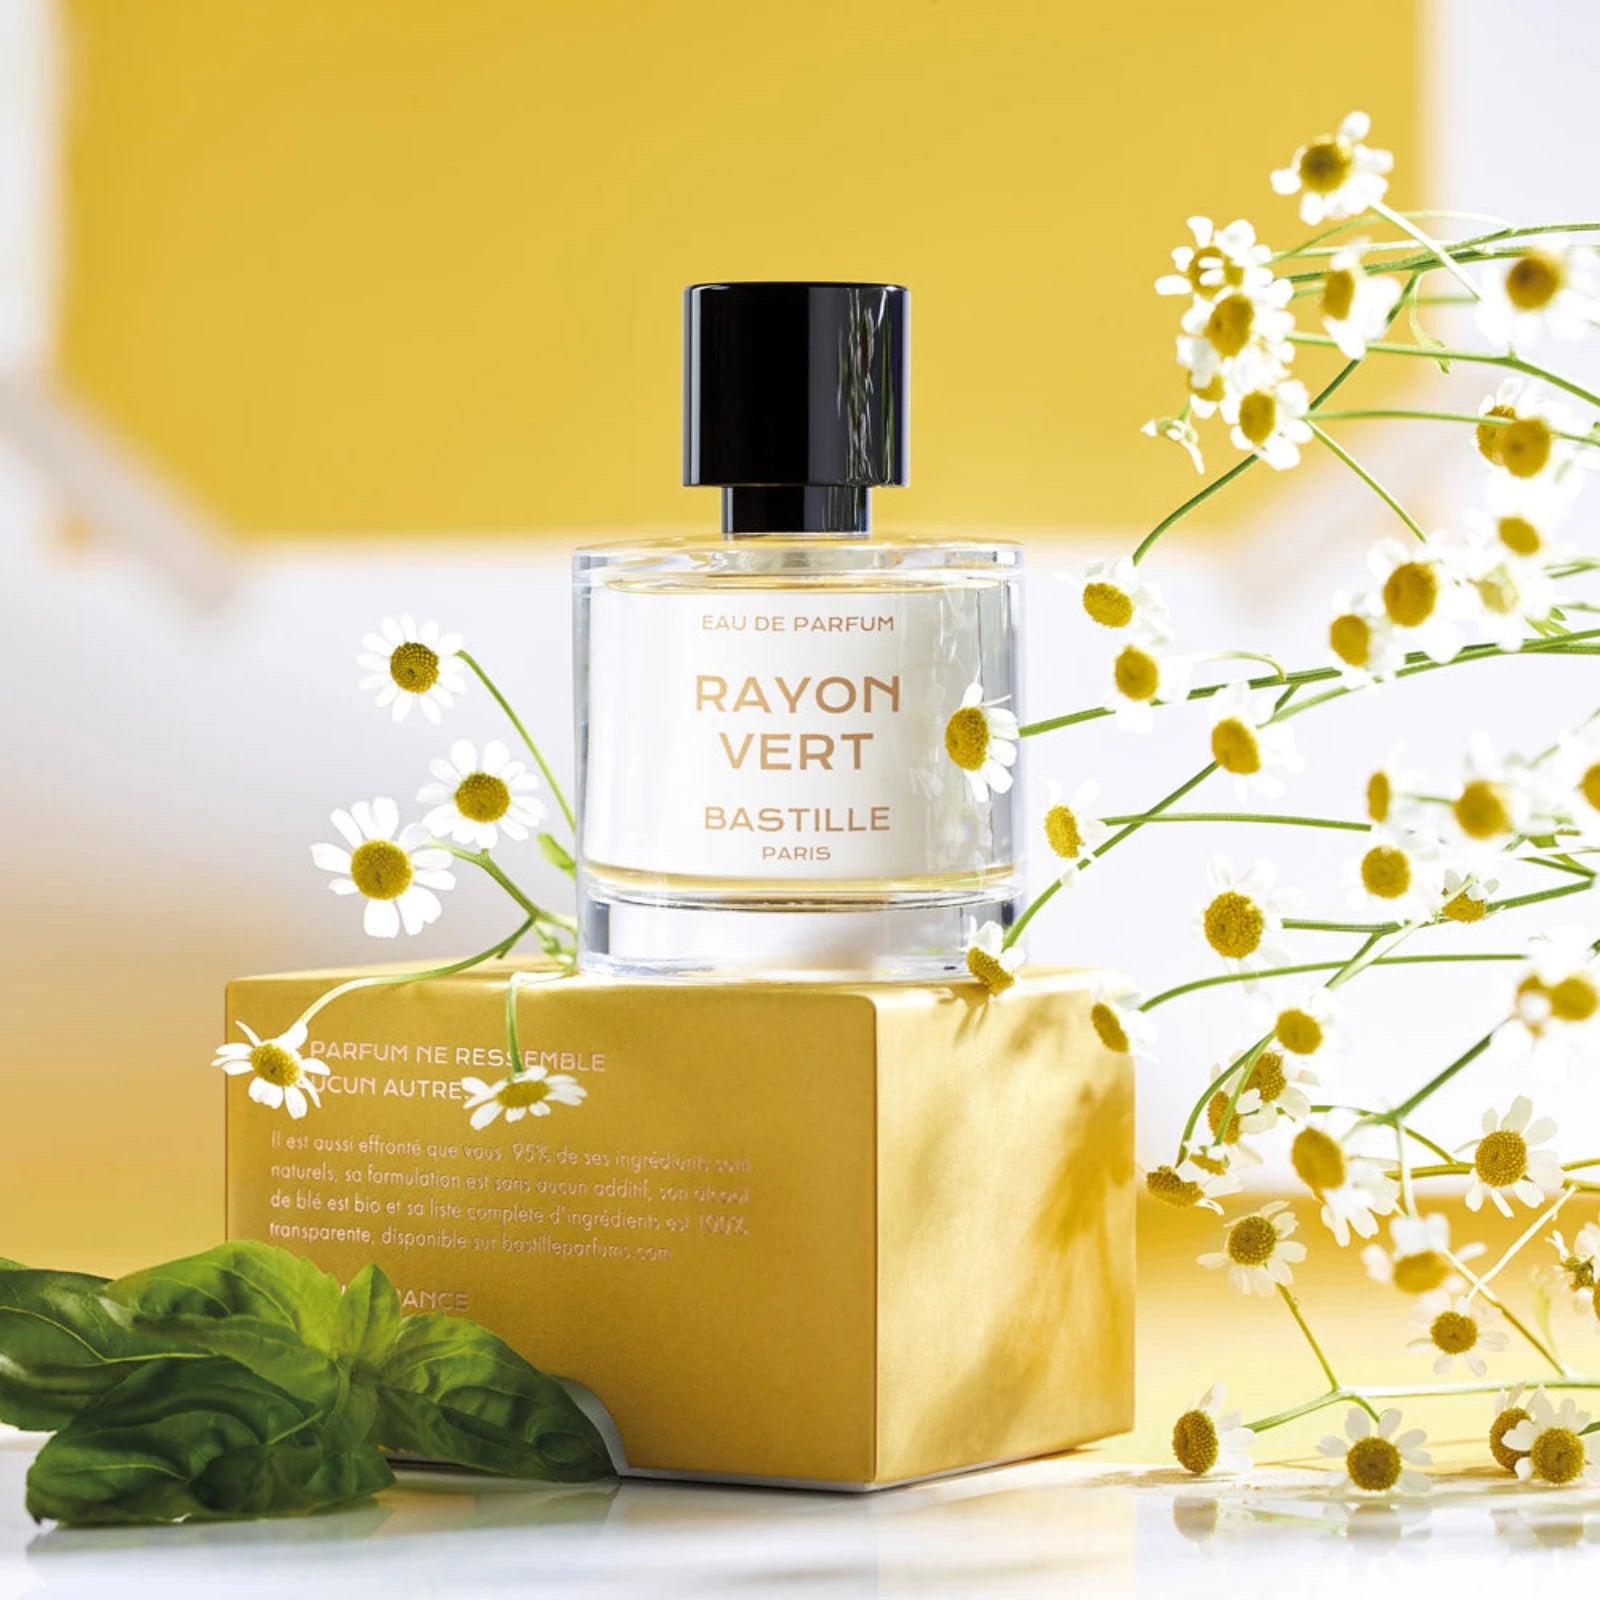 Rayon Vert Eau De Parfum fra Bastille Paris (gul baggrund)